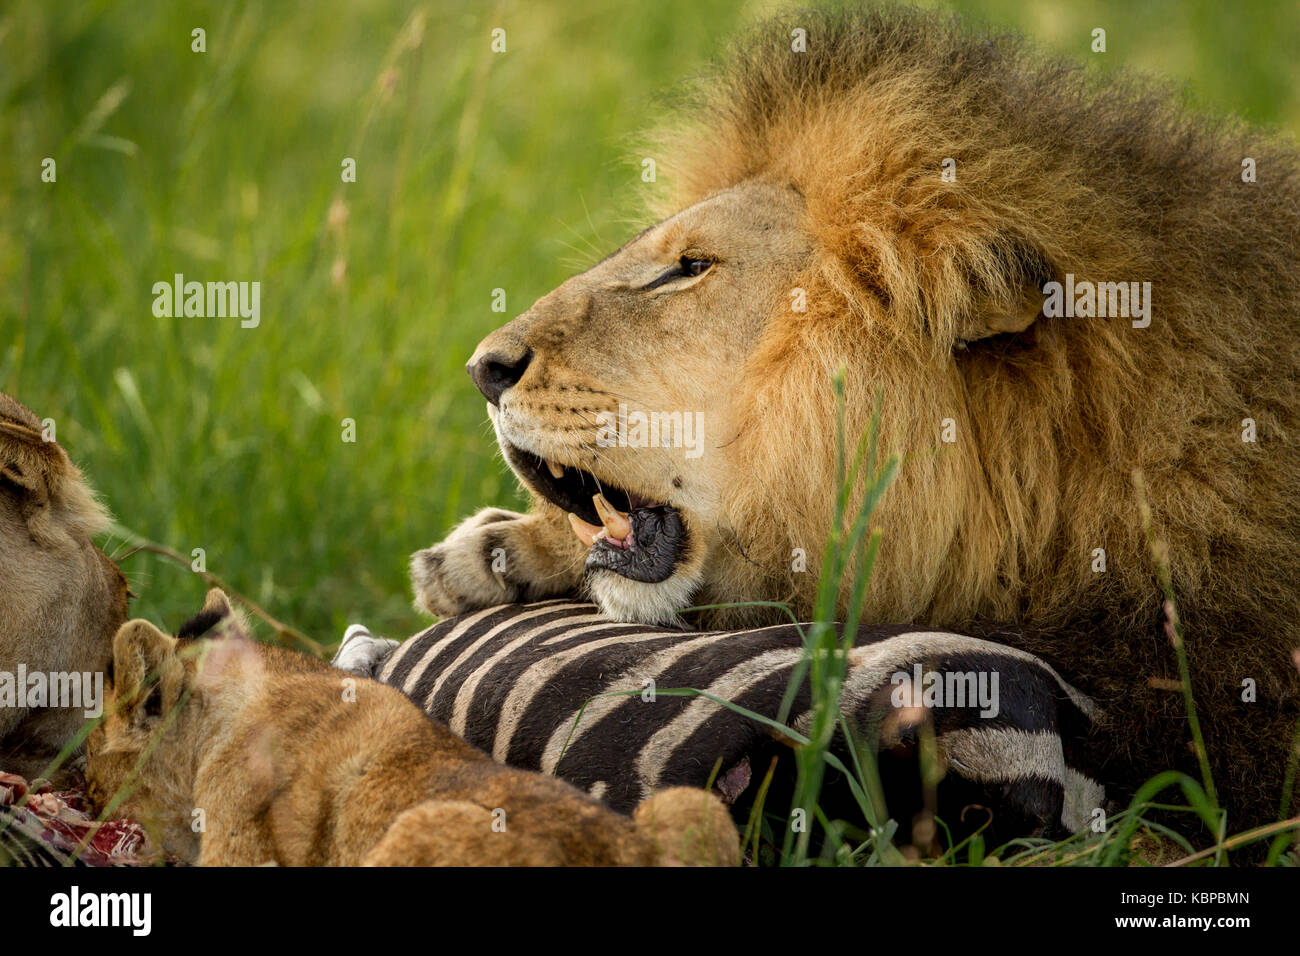 León macho grande proteger su zebra matar en la hierba mientras jadeando con la boca abierta Foto de stock